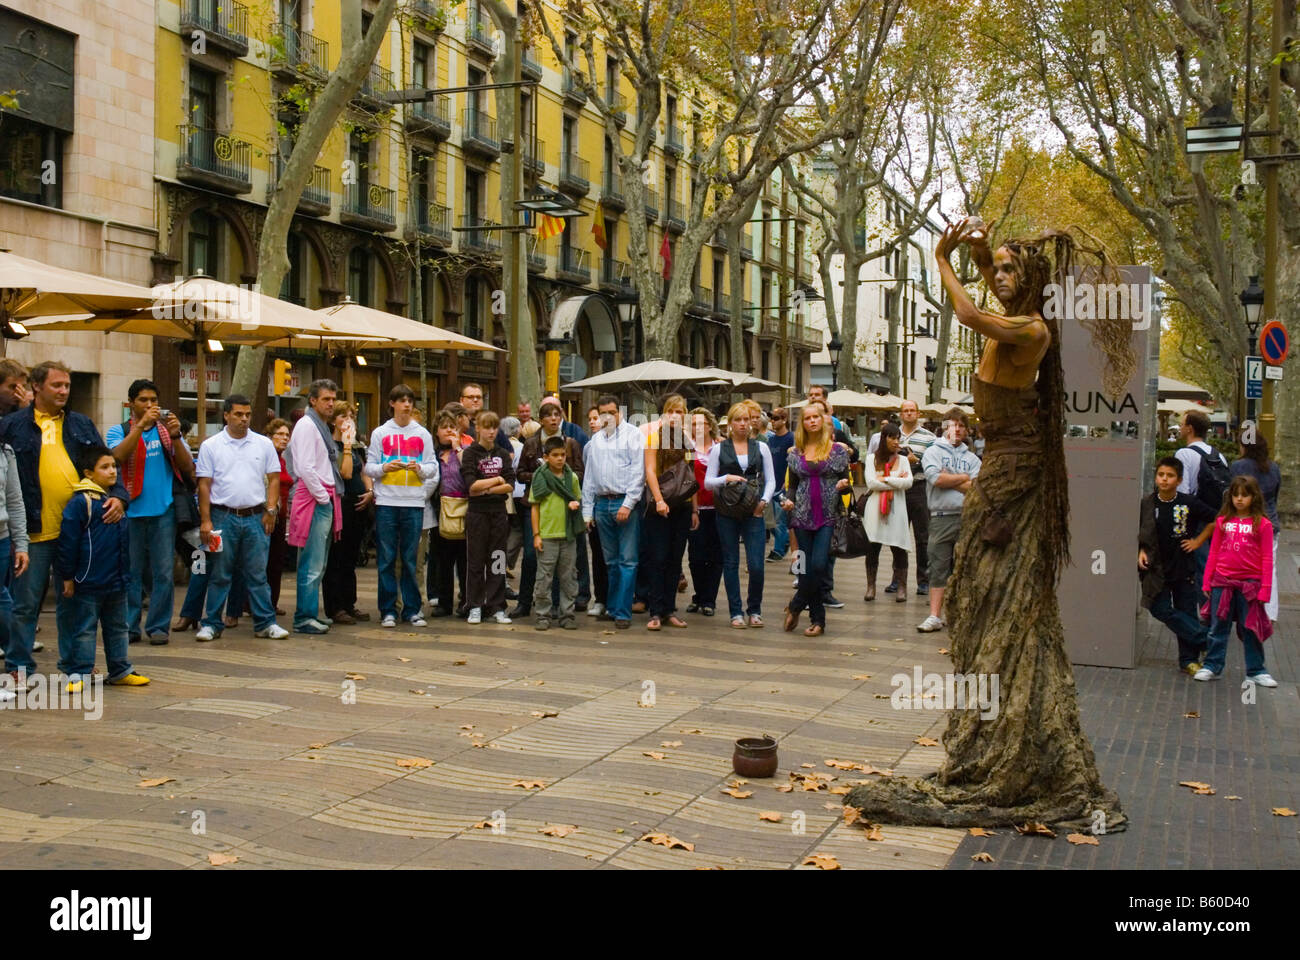 Le long de la statue humaine La Rambla à Barcelone Espagne Europe Banque D'Images